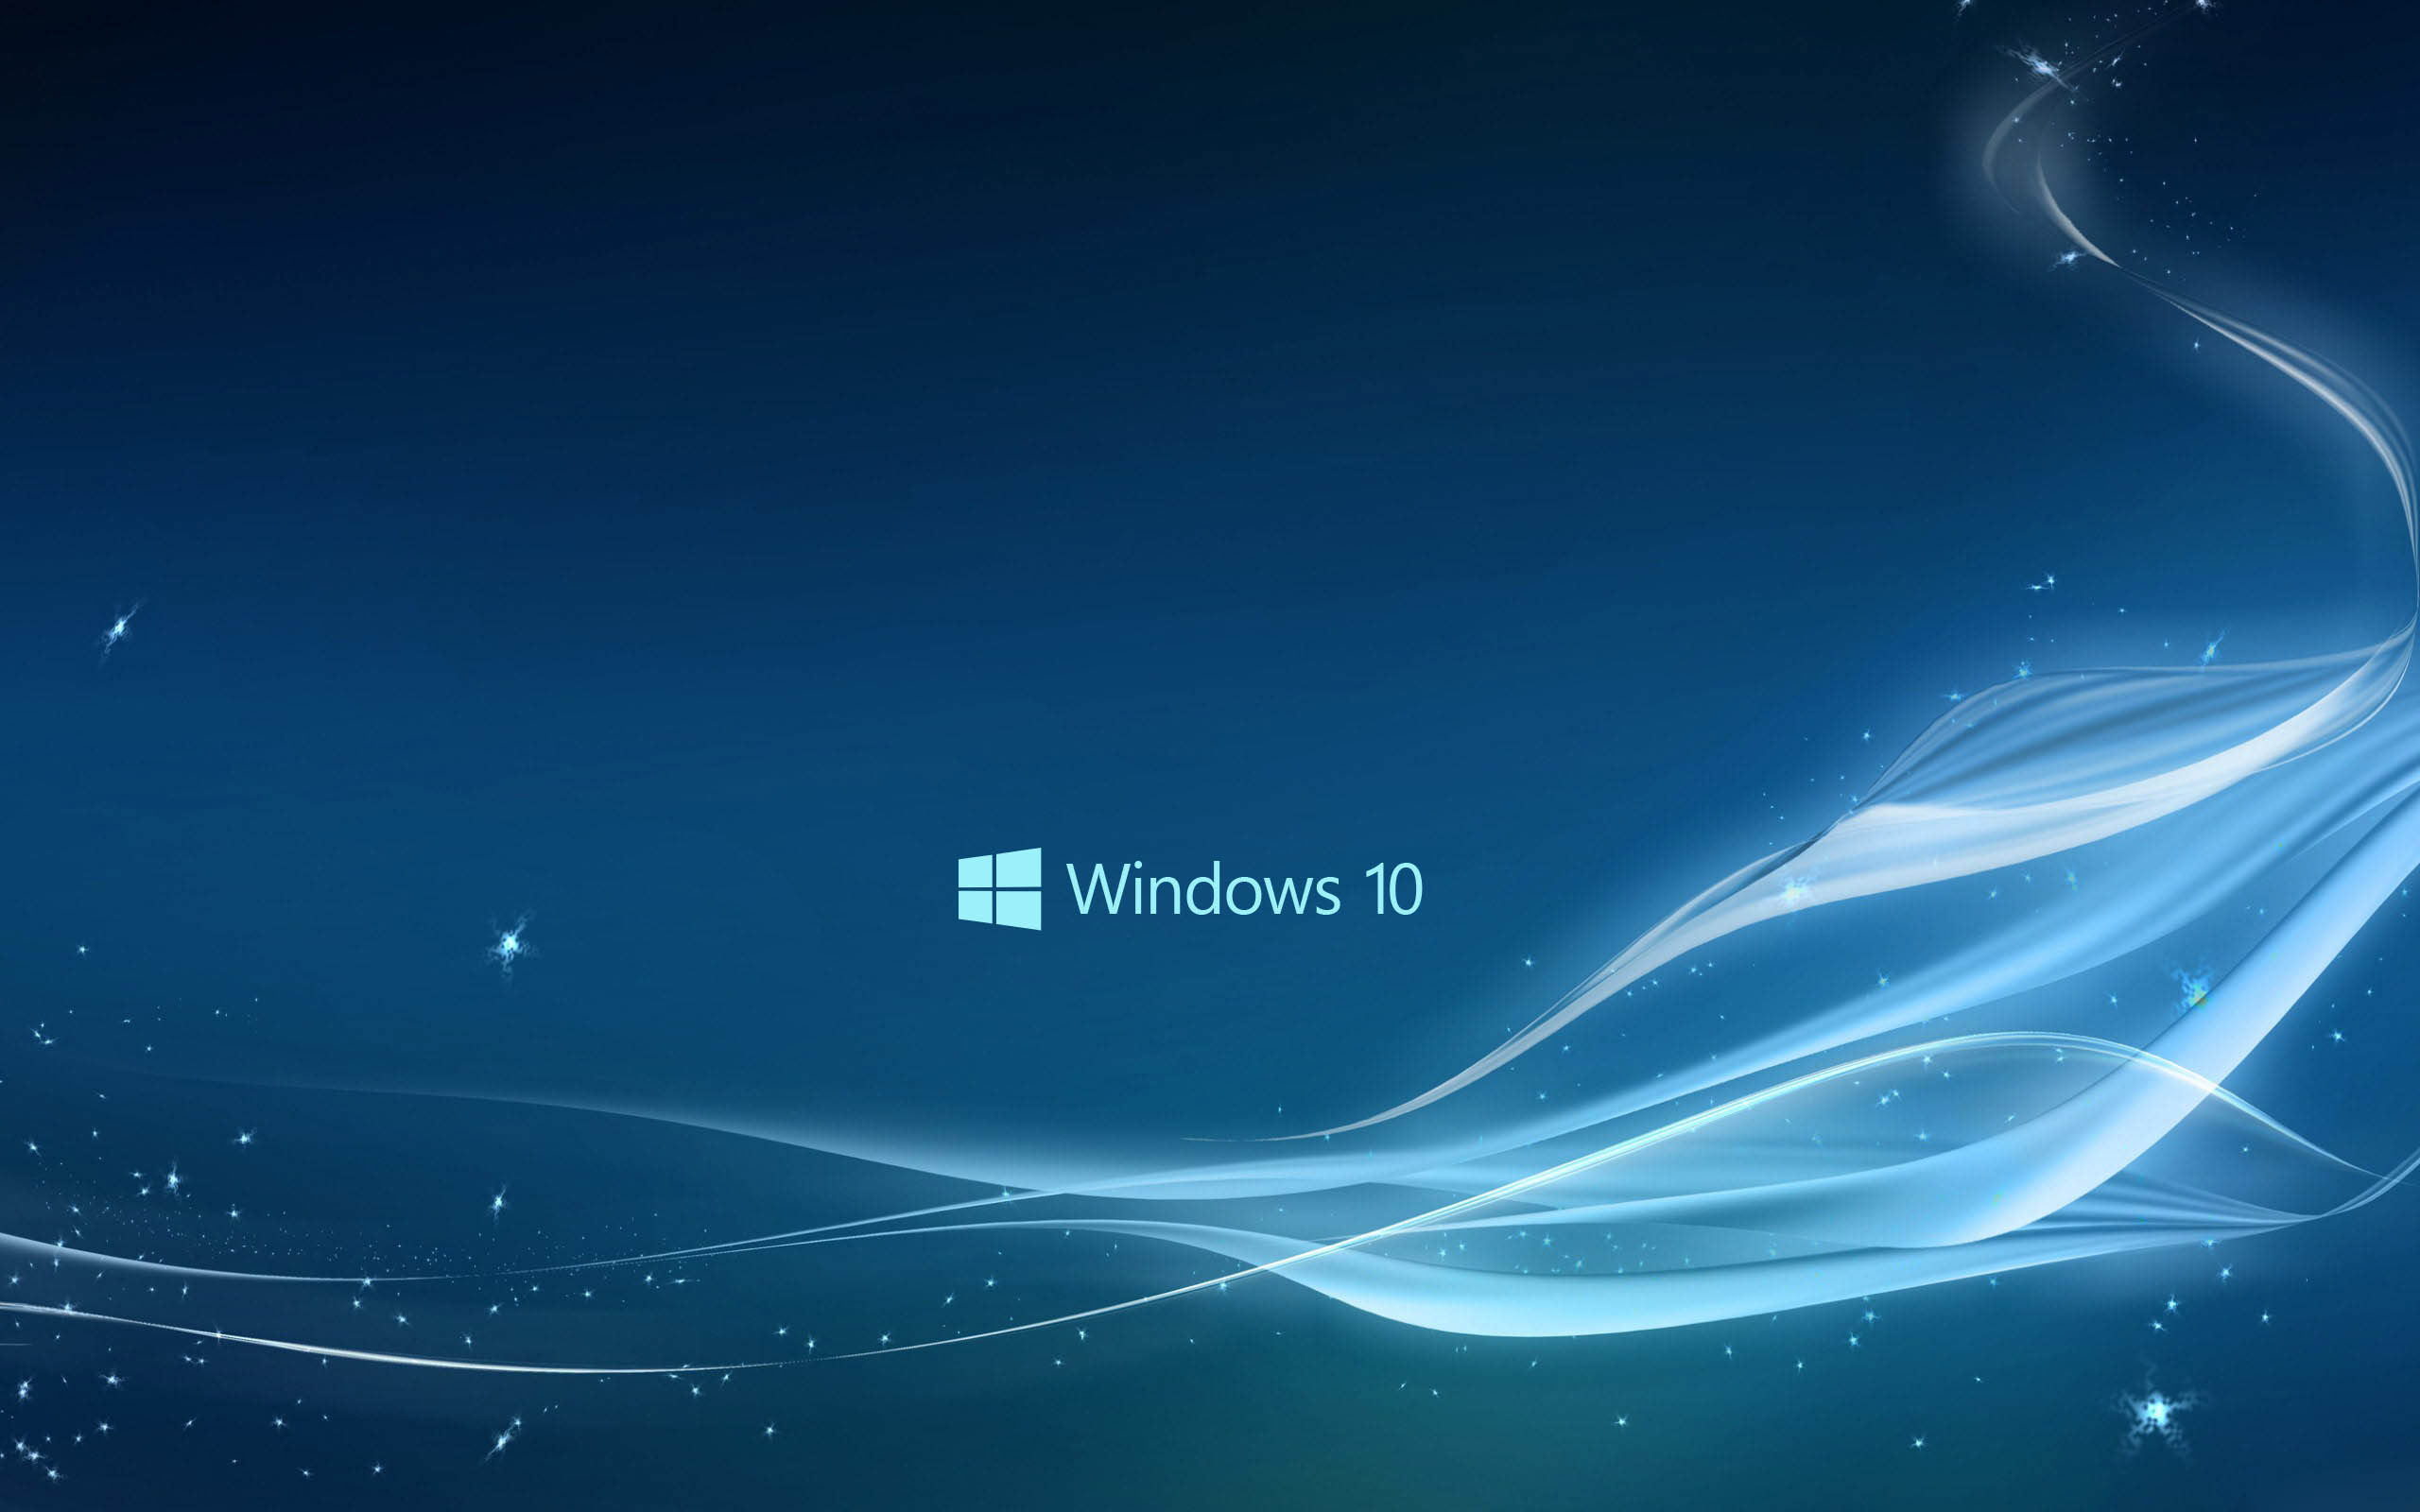 New Blue Windows 10 Wallpaper HD 12437 Wallpaper High Resolution 2560x1600